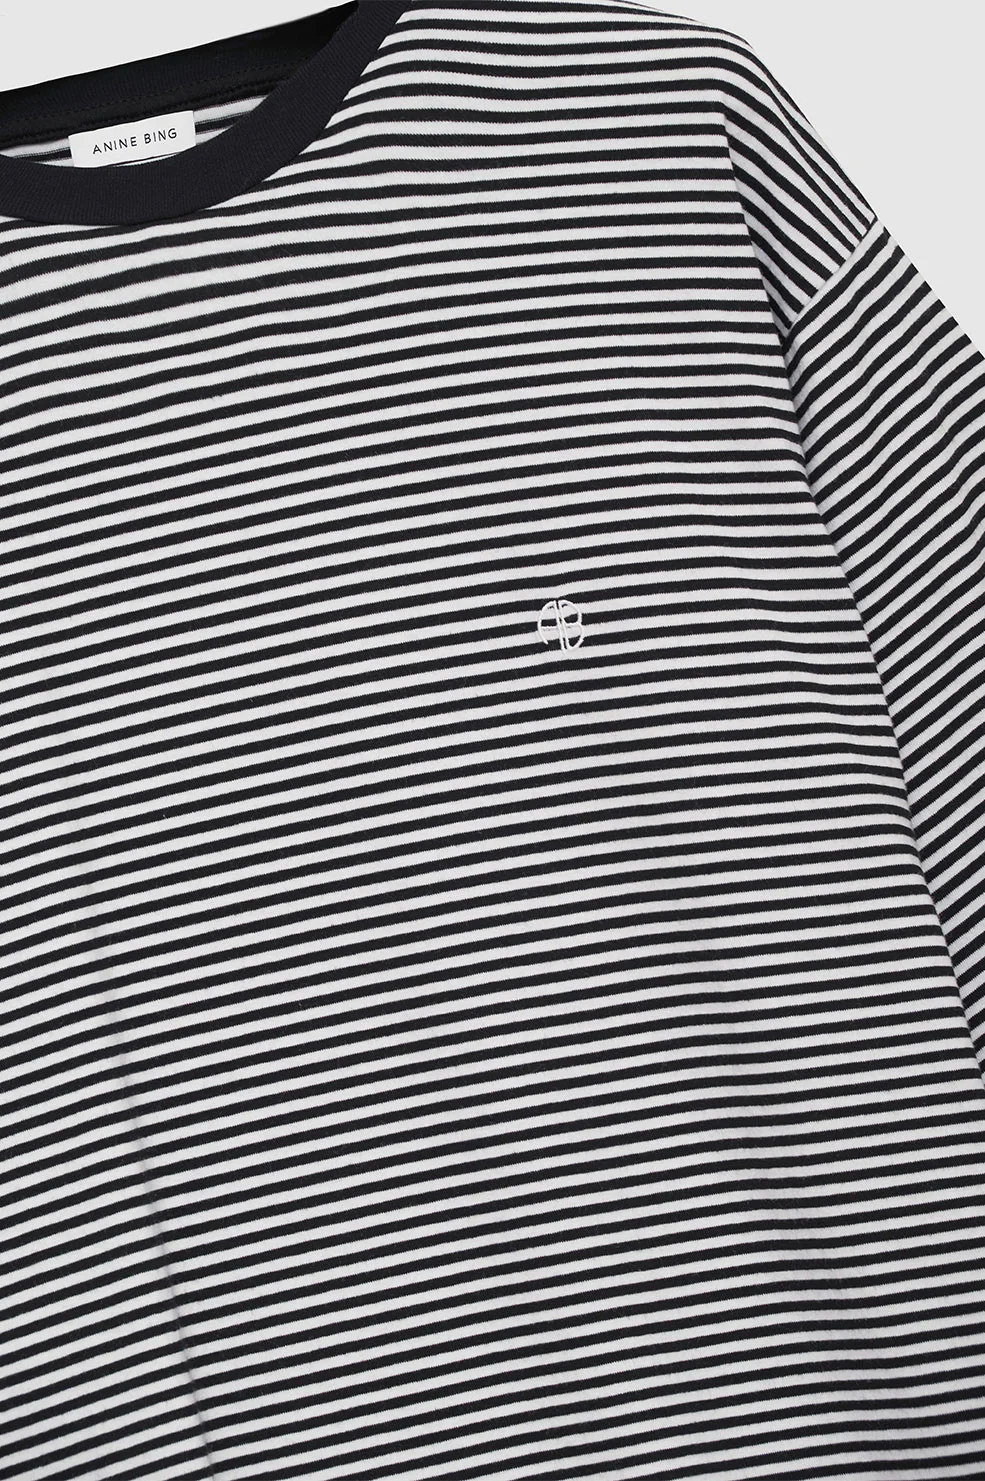 Anine Bing - Bo Tee in Black and White Stripe